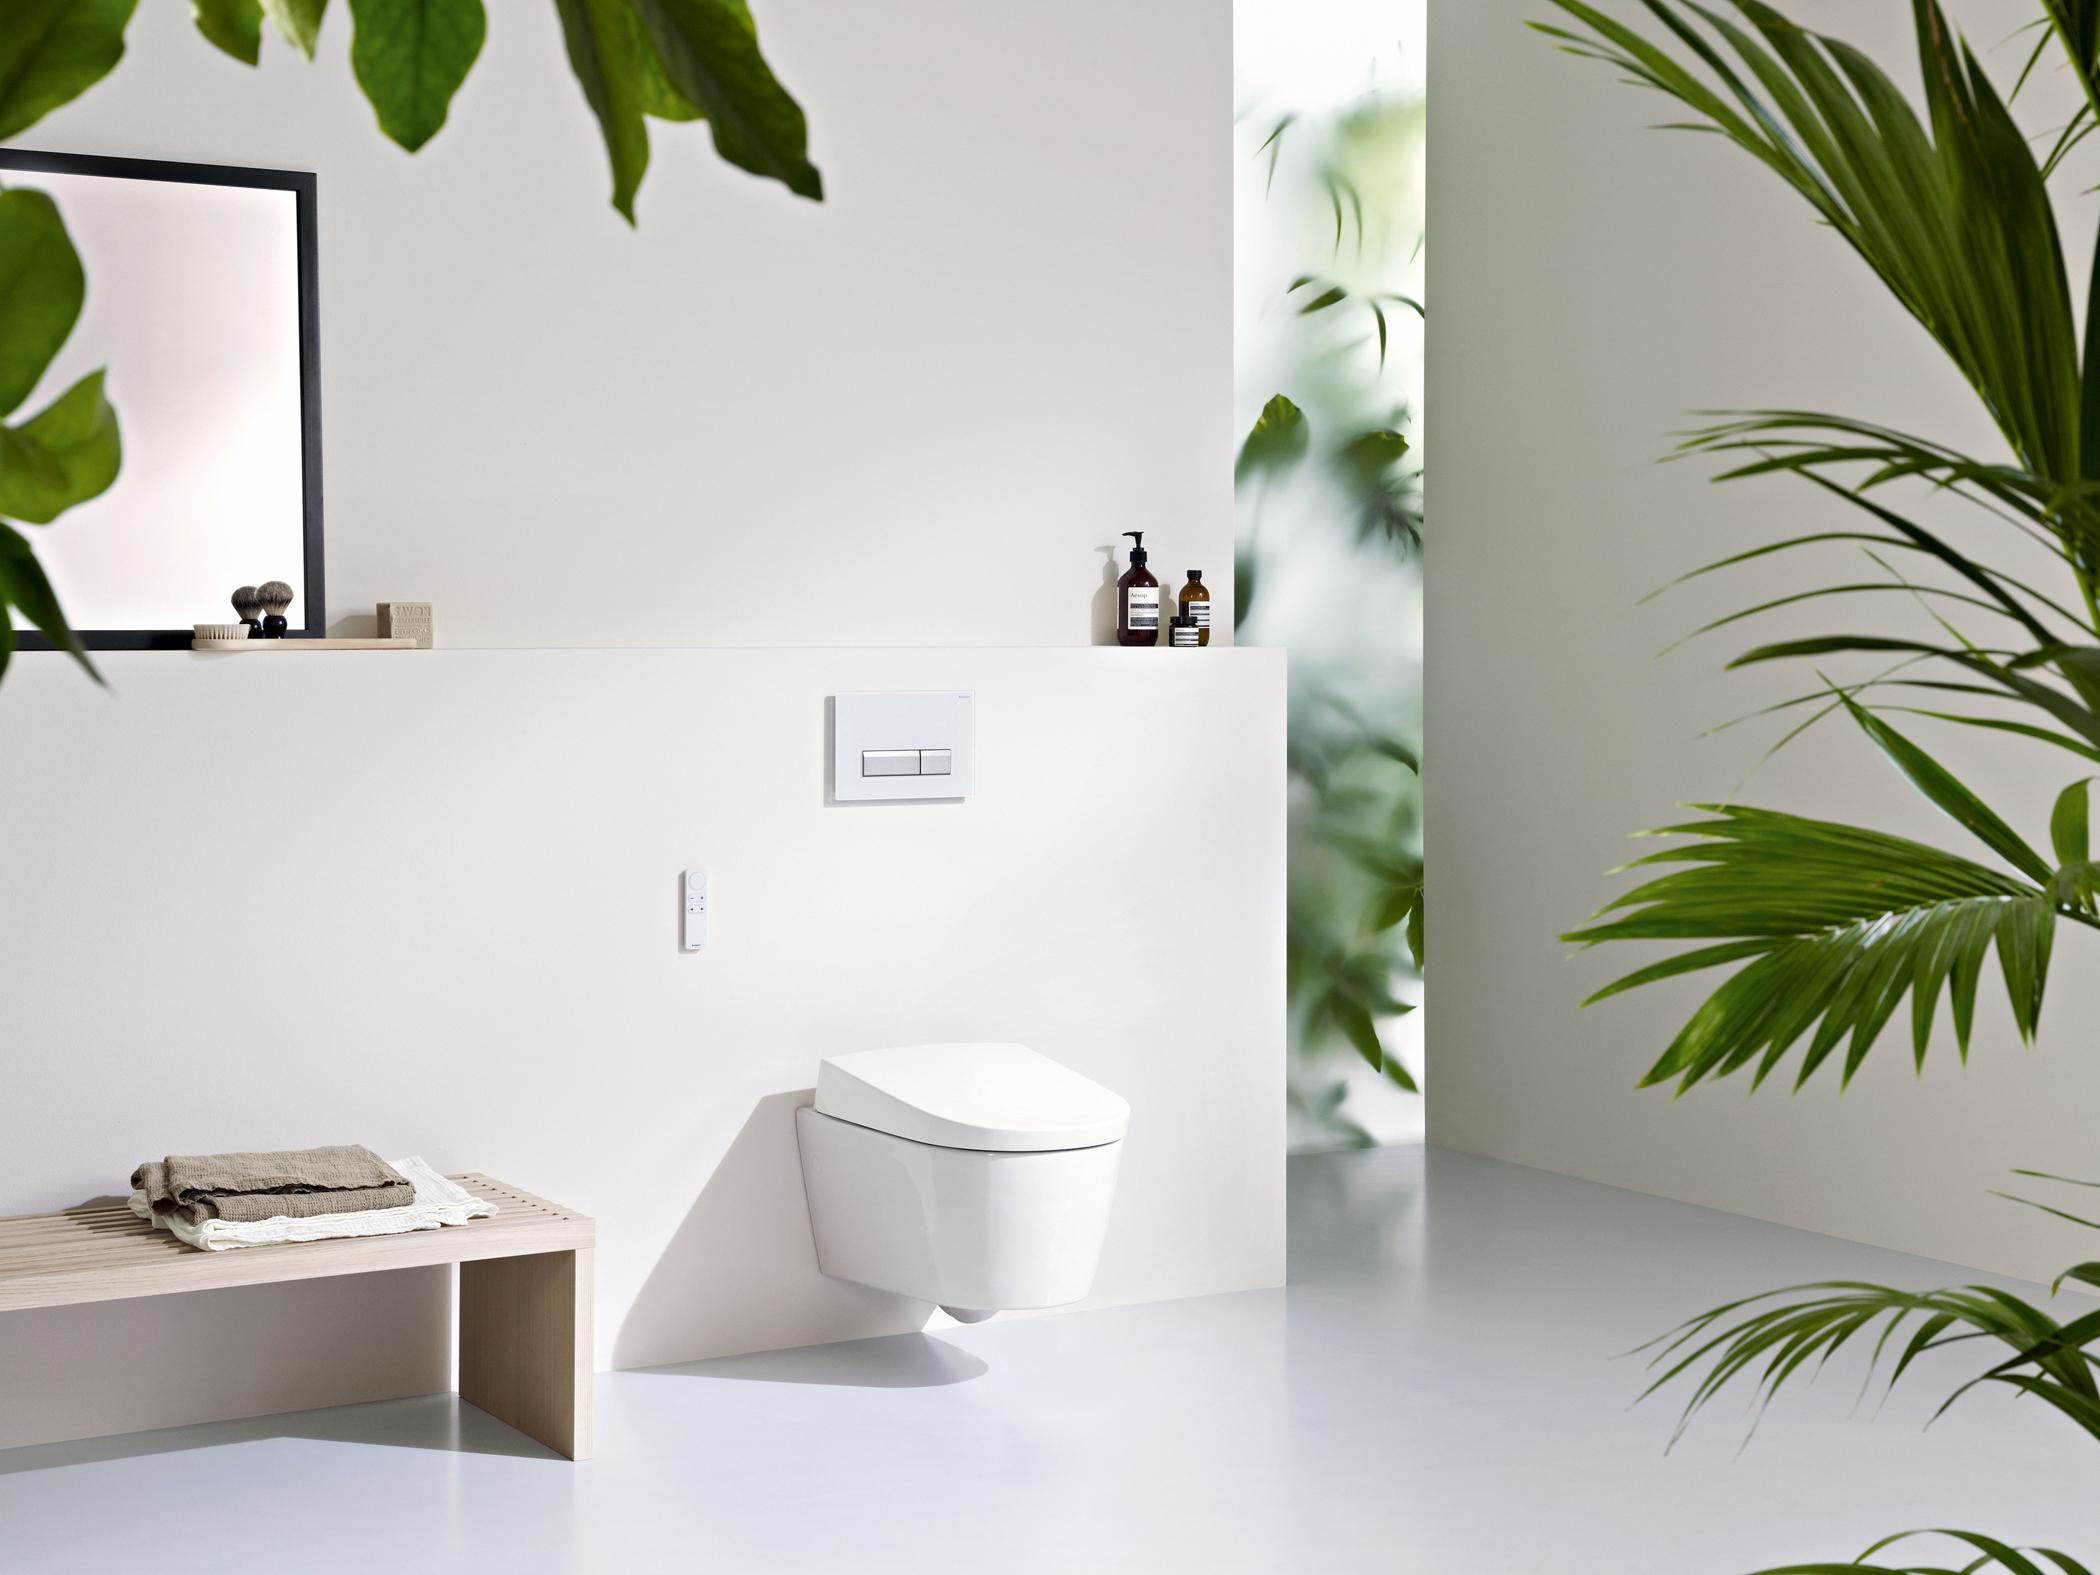 Modernes Badezimmer mit "AquaClean Sela"-WC #badezimmer #puristisch #minimalistisch #badezimmereinrichtung #badezimmergestalten ©Geberit, Designer: Matteo Thun